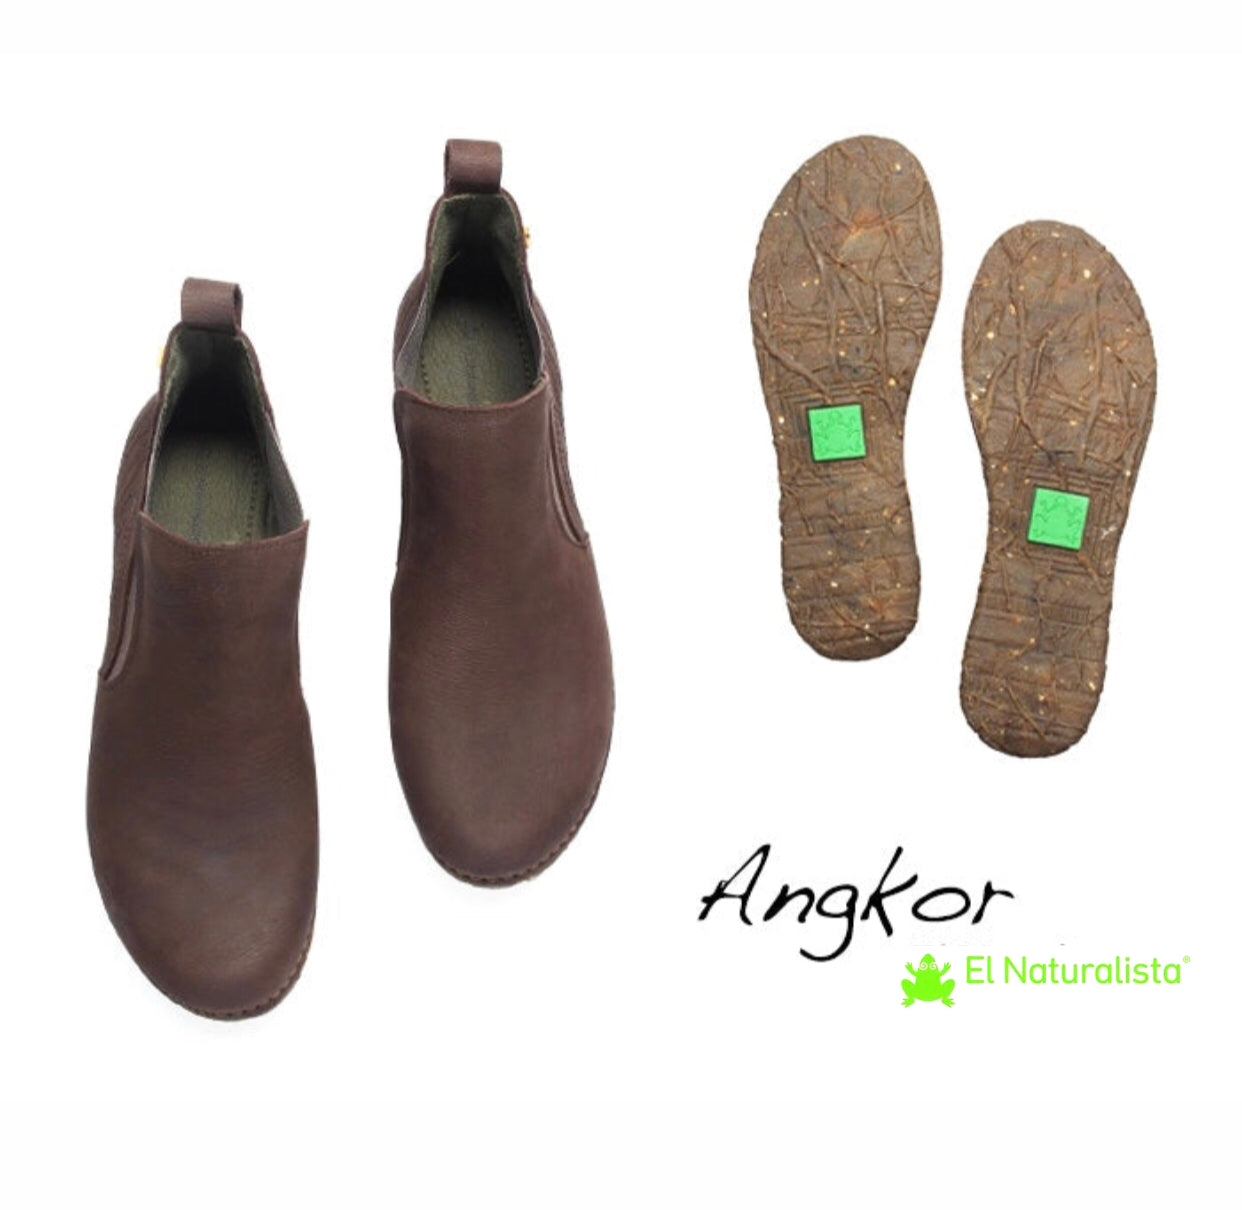 El Naturalista 5465 Brown Angkor Chelsea Boot Made In Spain